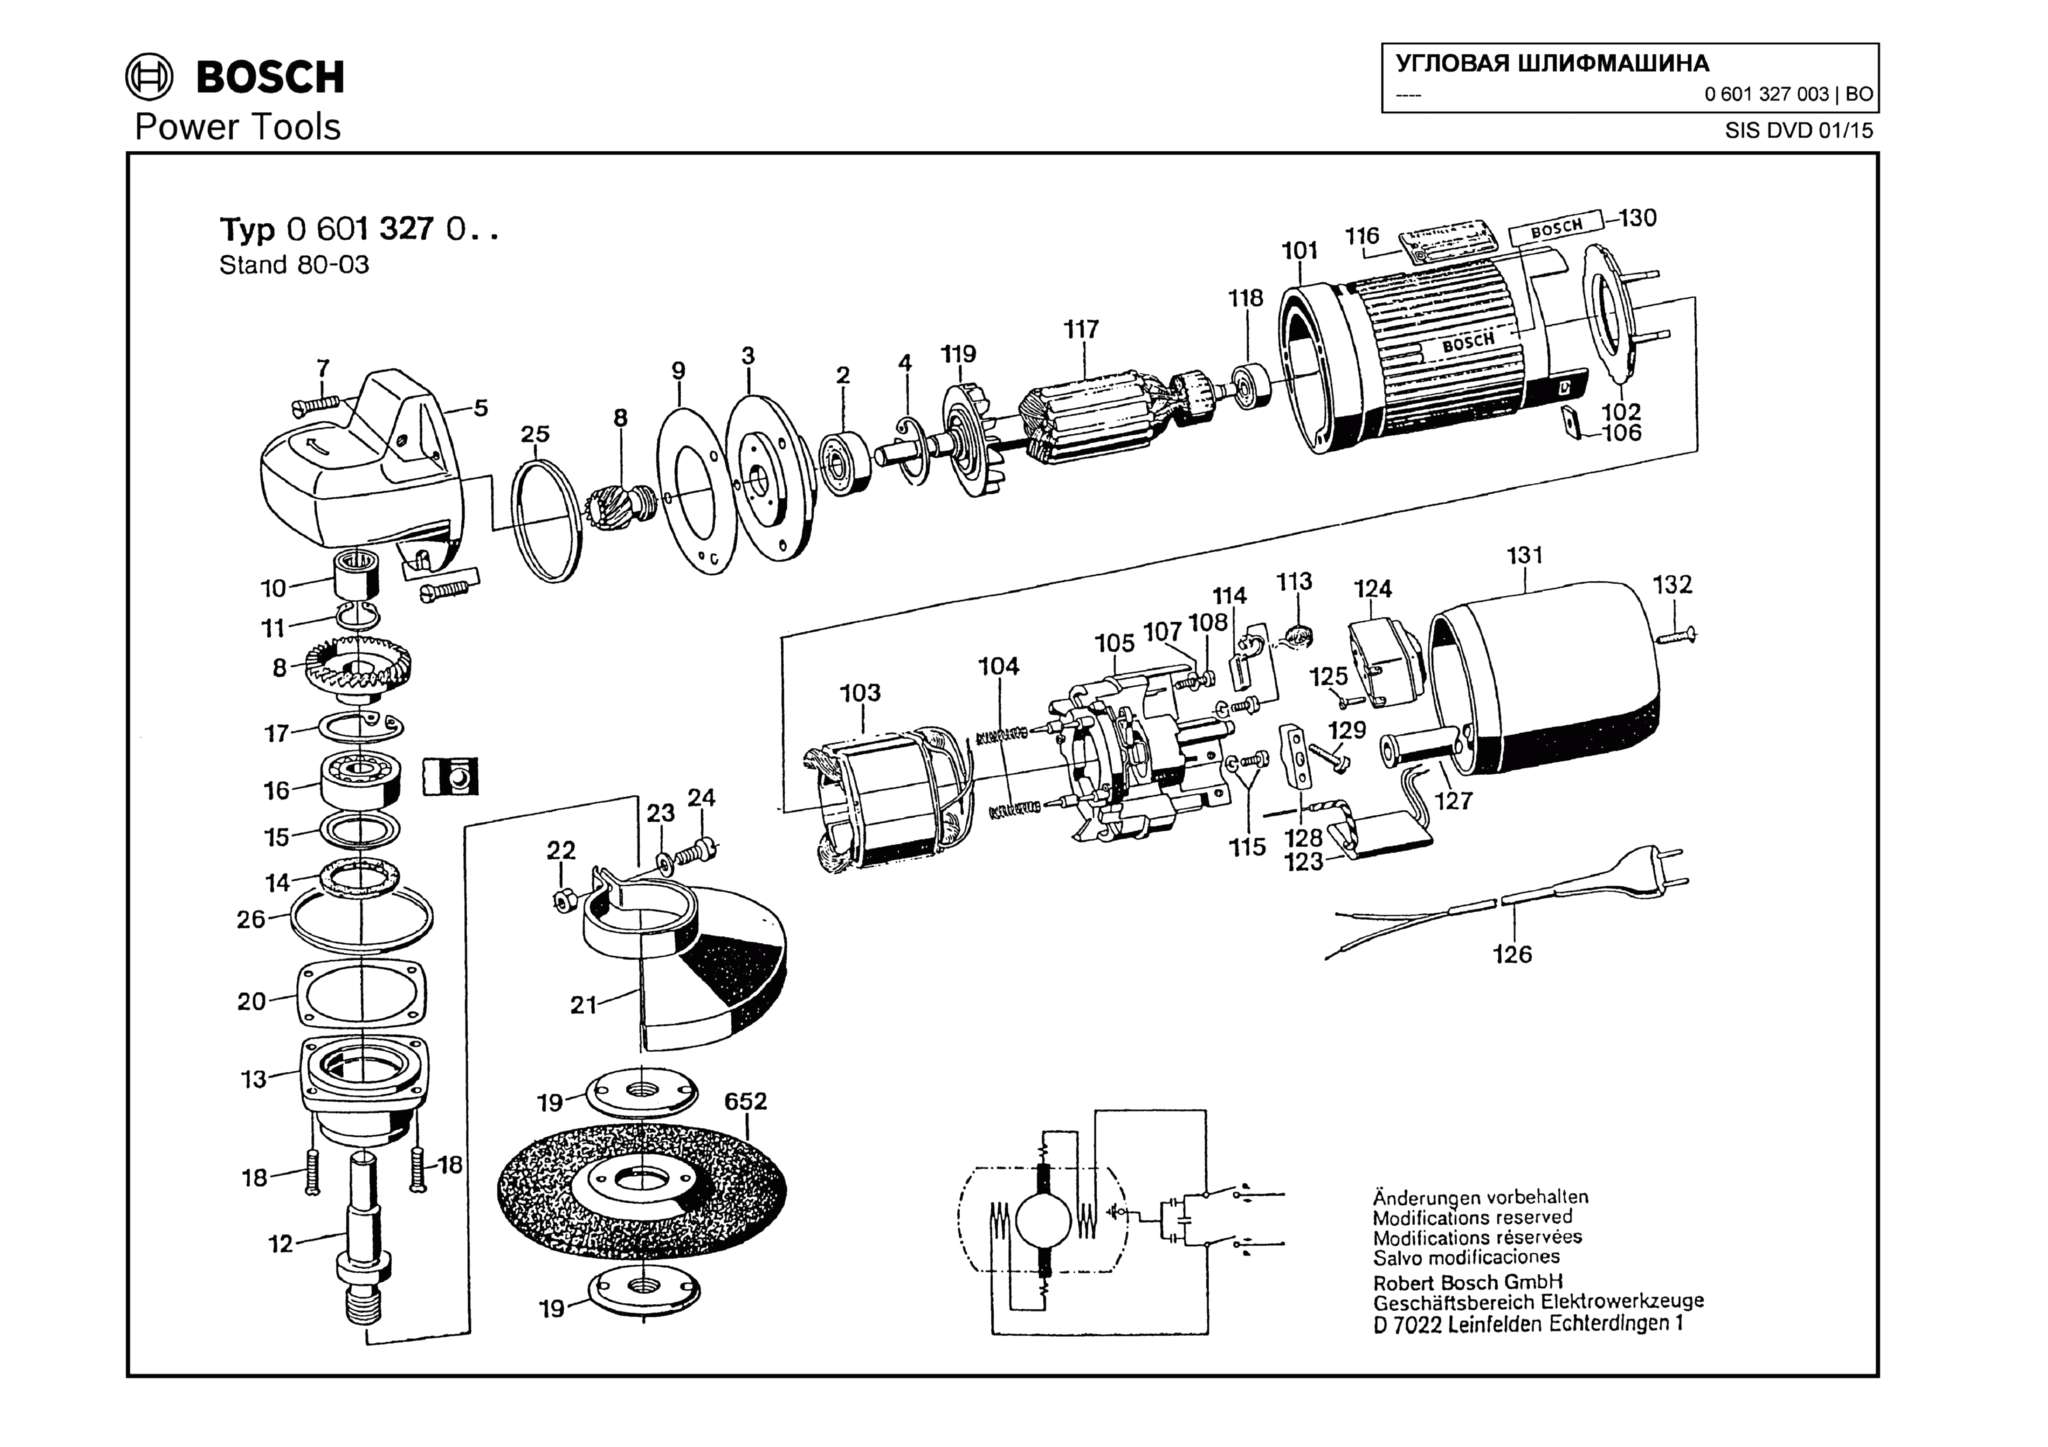 Запчасти, схема и деталировка Bosch (ТИП 0601327003)